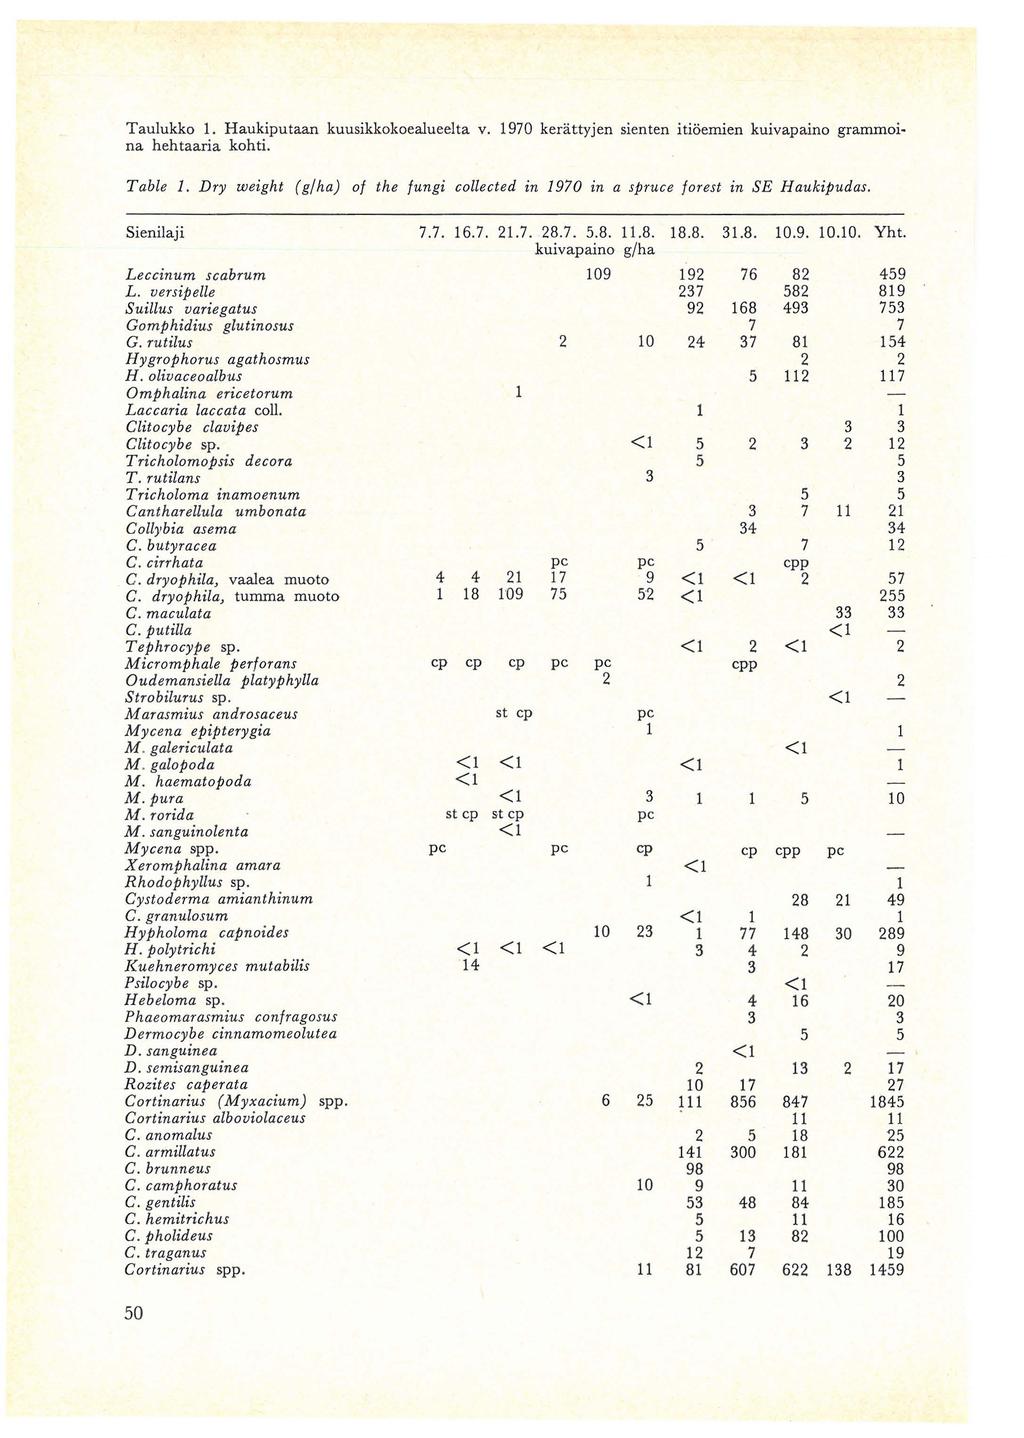 Taulukko 1. Haukiputaan kuusikkokoealueelta v. 1970 kerattyjen sienten itioemien kuivapaino grammoina hehtaaria kohti. Table 1.